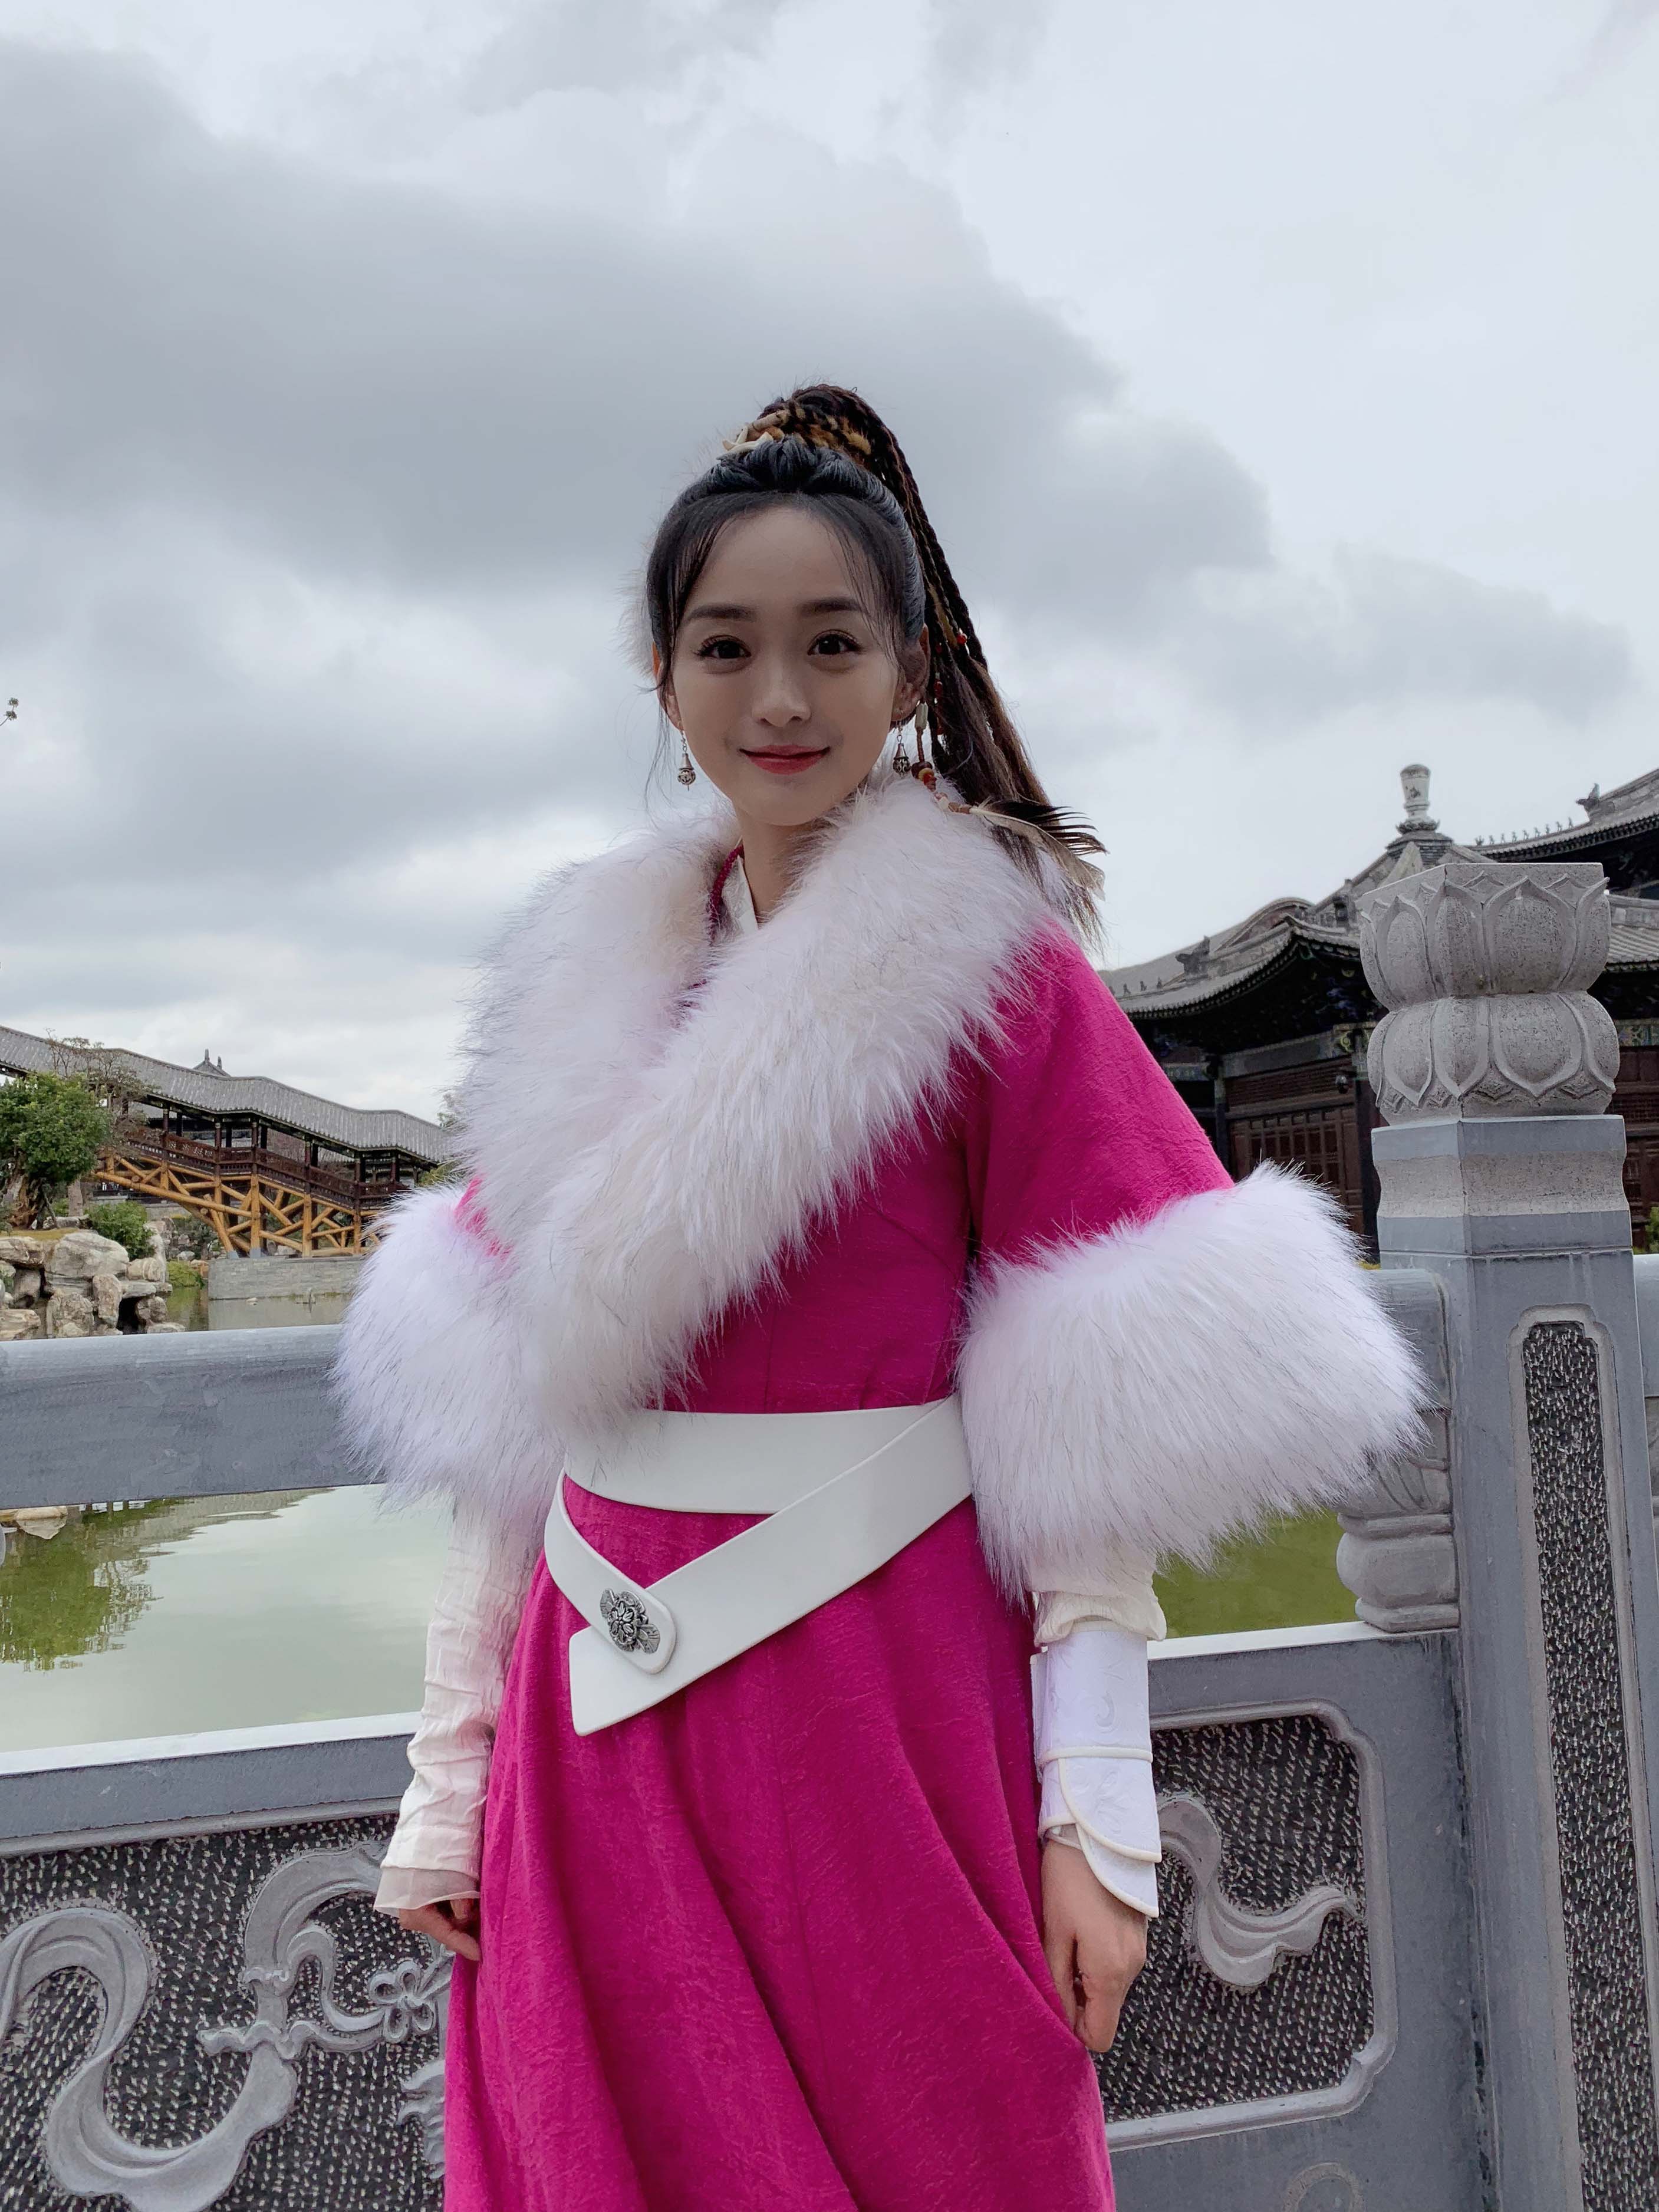 据悉,2019年,除了新版《天龙八部》外,何泓姗主演的古装传奇励志大